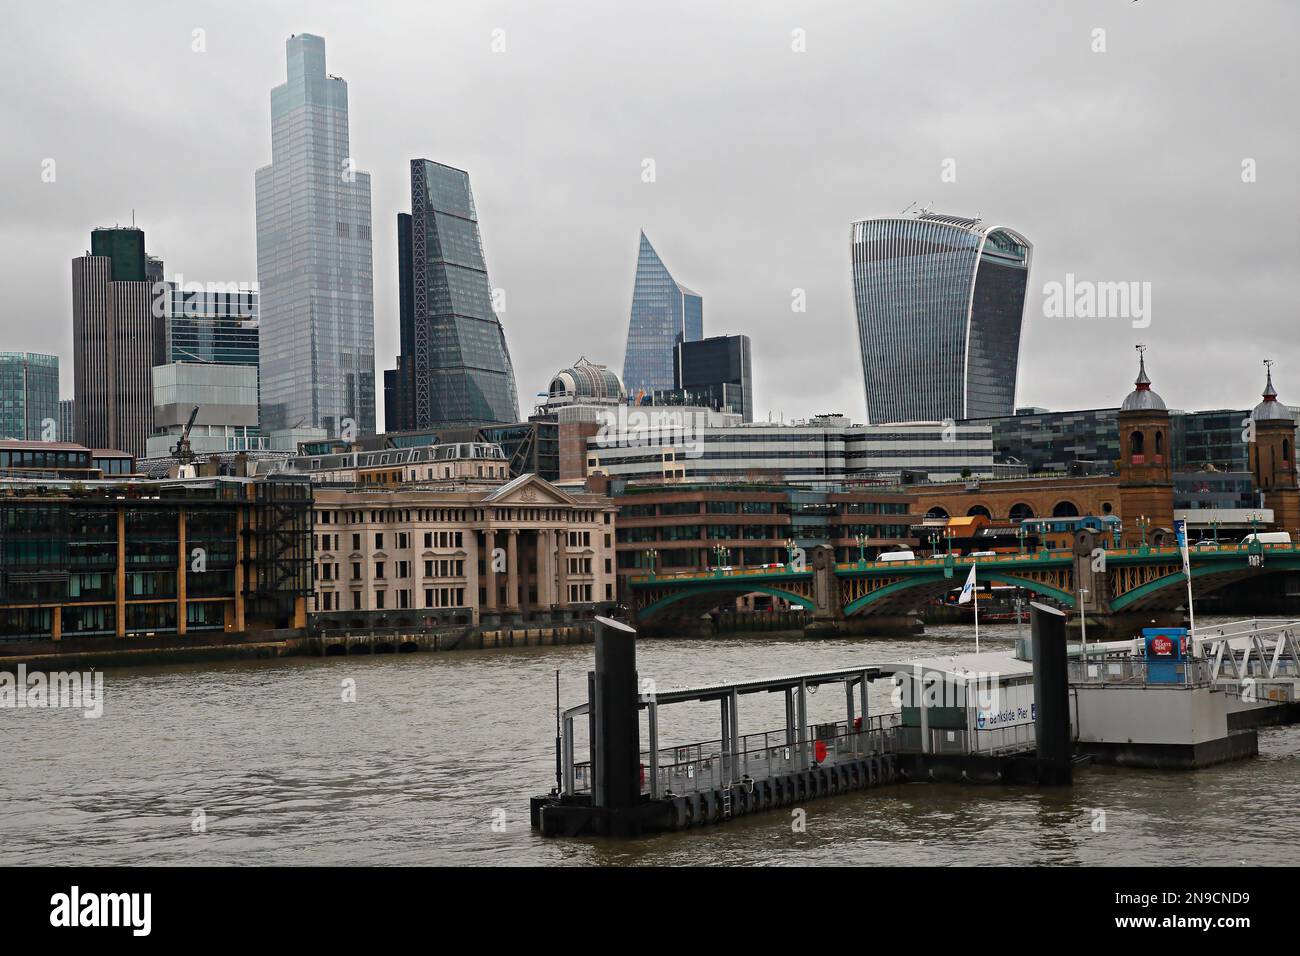 Londres, Royaume-Uni - 28 février,2020: Quai de Bankside comme partie du système de transport par bateau et panorama de la ville de Londres Banque D'Images